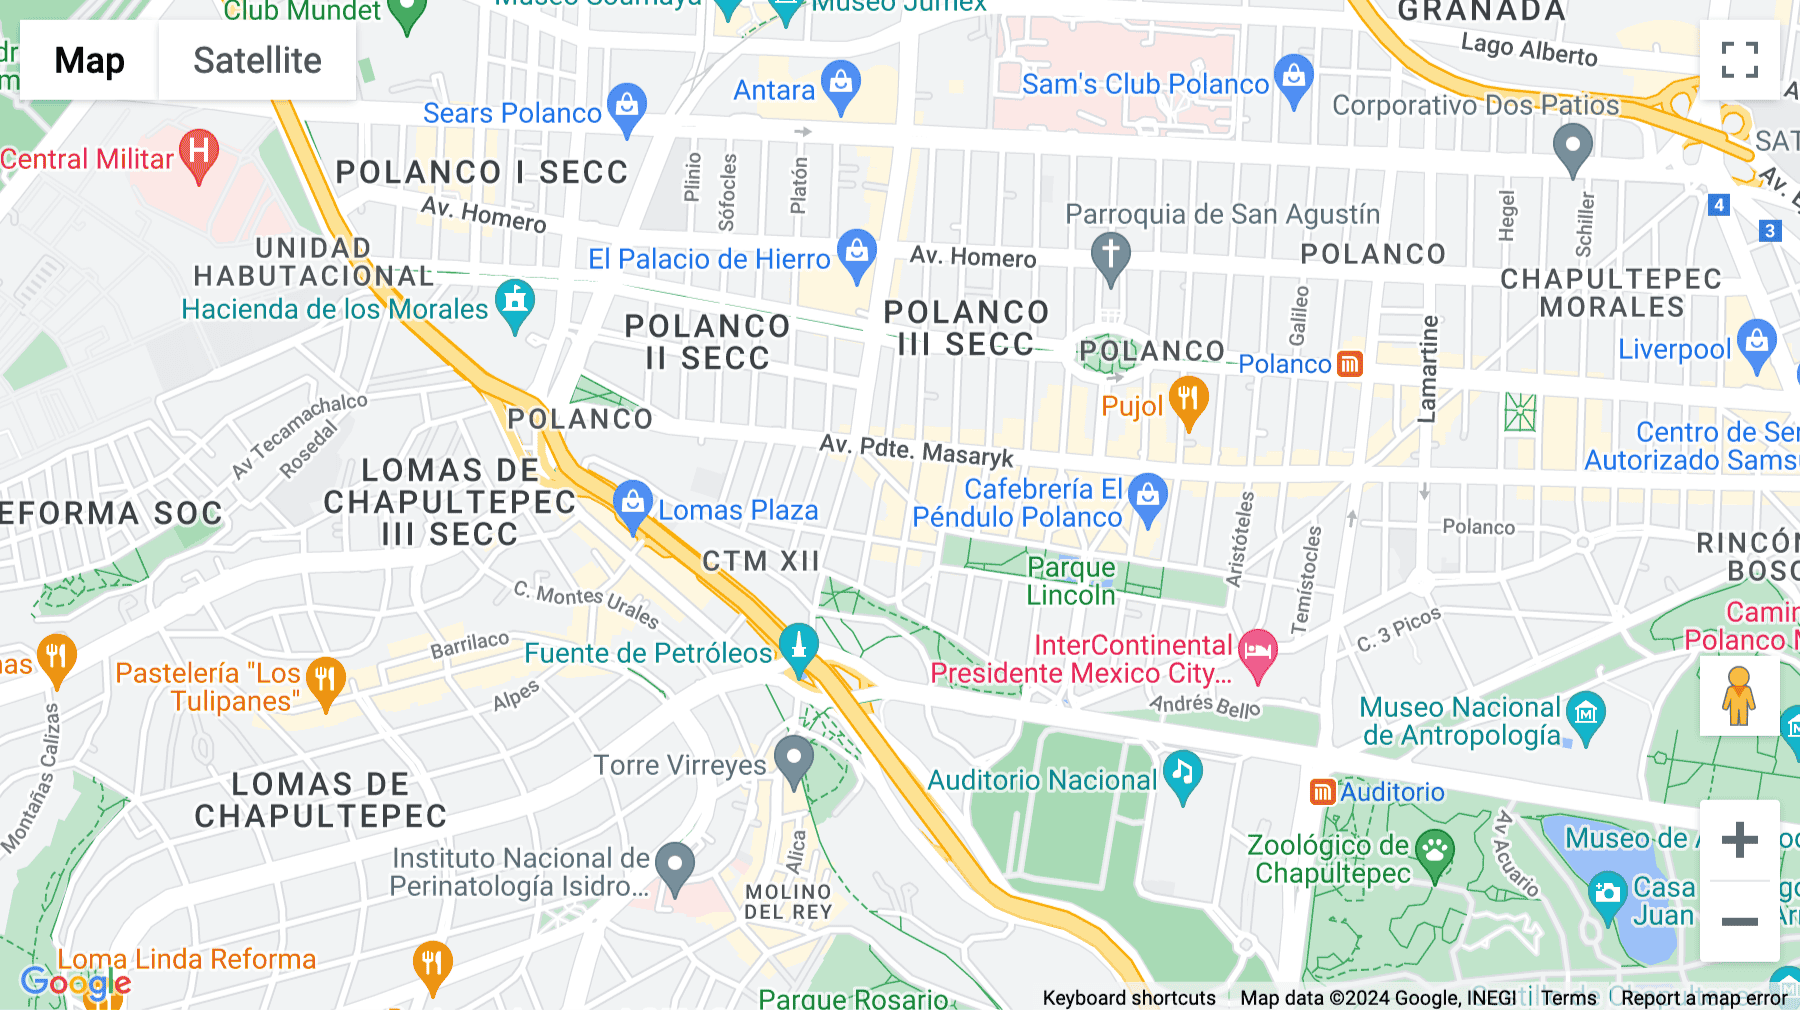 Click for interative map of Goldsmith 40. Col Polanco Del. Miguel Hidalgo C.P 11550, Col Polanc, Mexico City